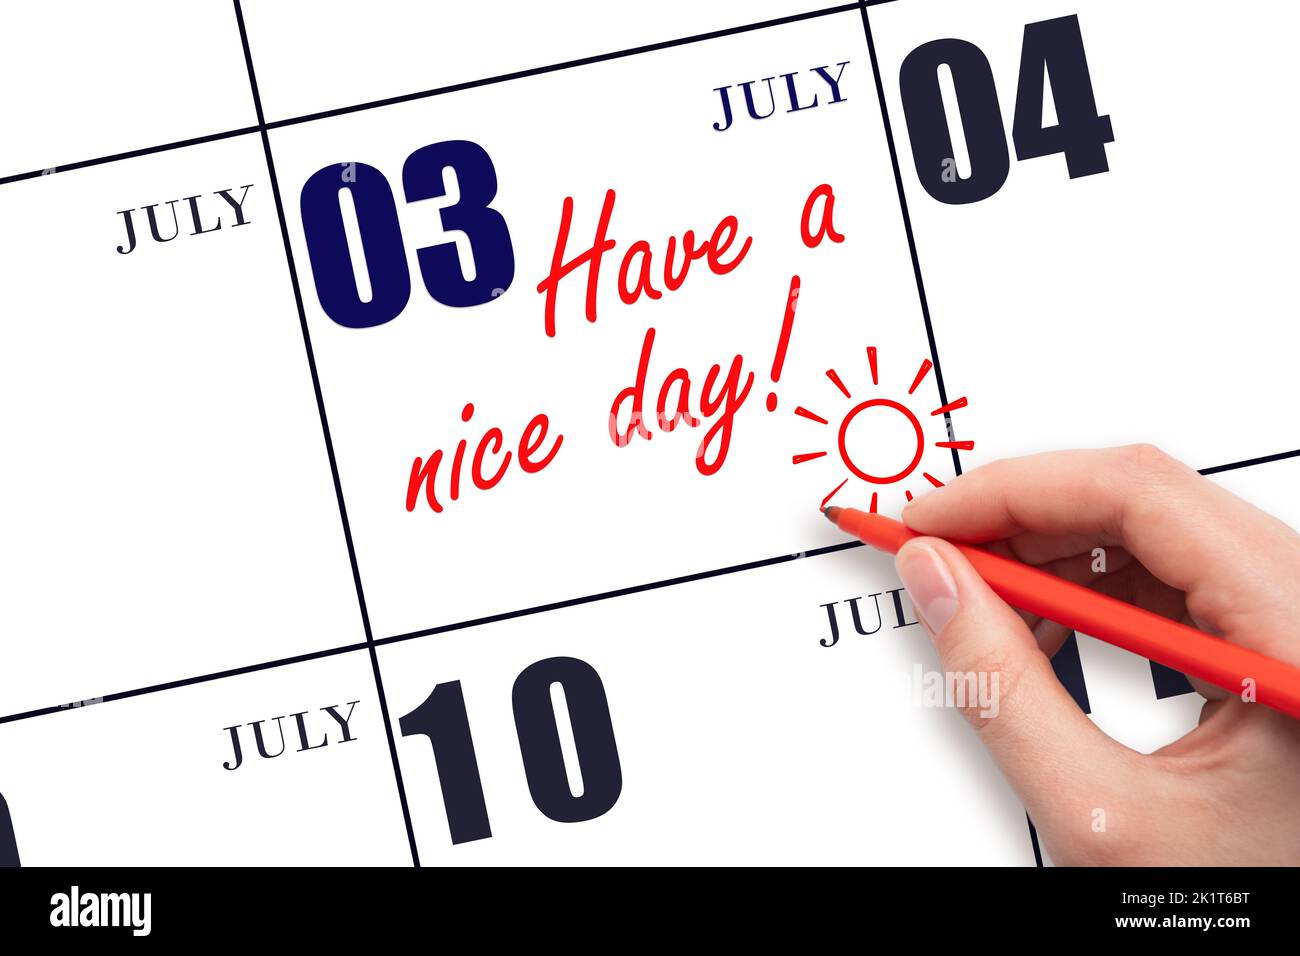 3rd jour de juillet. La main écrivant le texte ont une belle journée et dessinant le soleil sur la date calendrier 3 juillet. Enregistrez la date. Mois d'été, jour du vous Banque D'Images